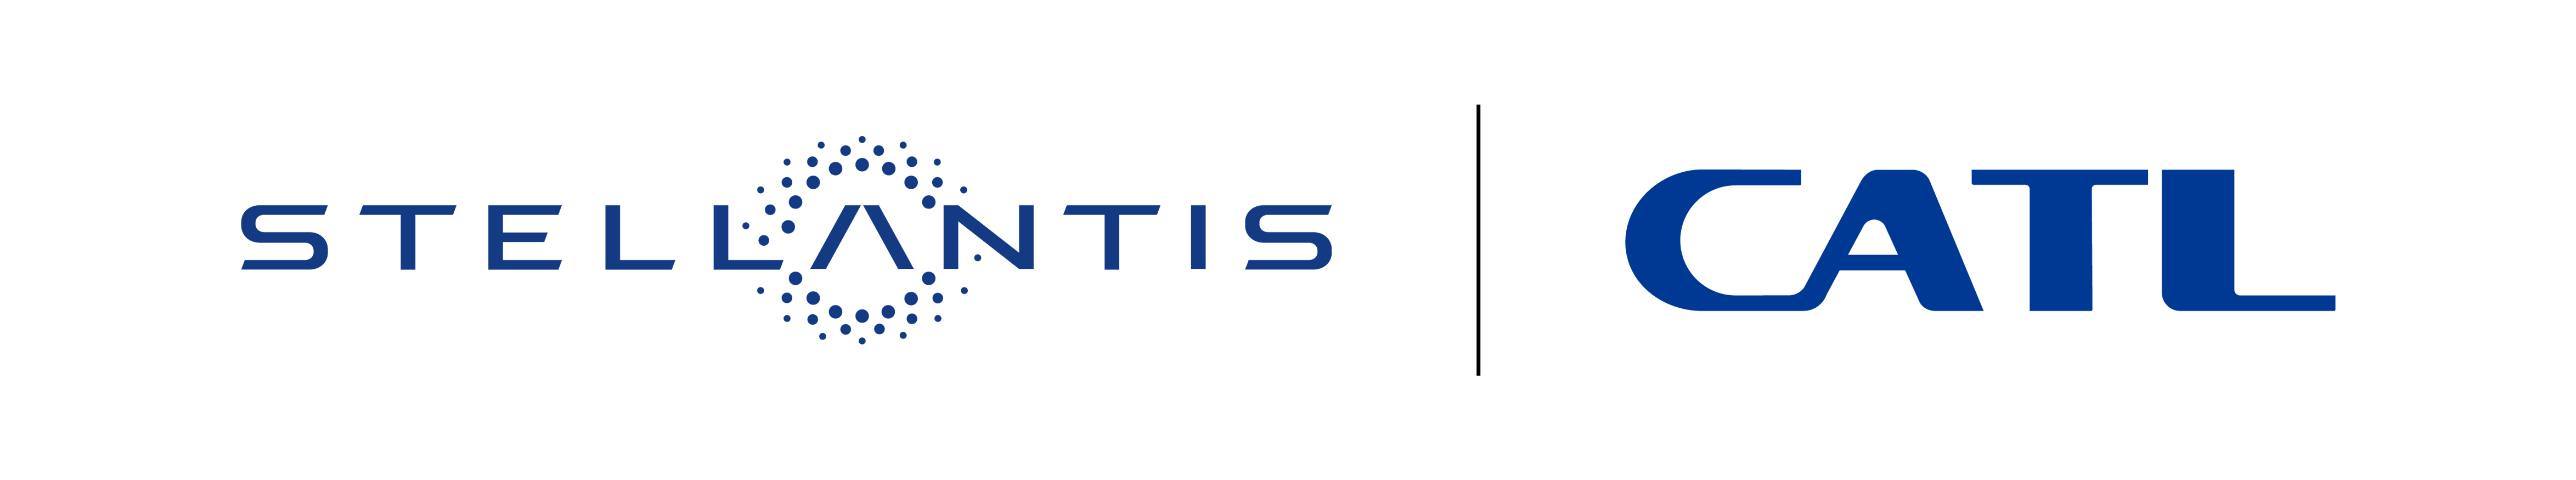 Immagine di Stellantis e CATL logo